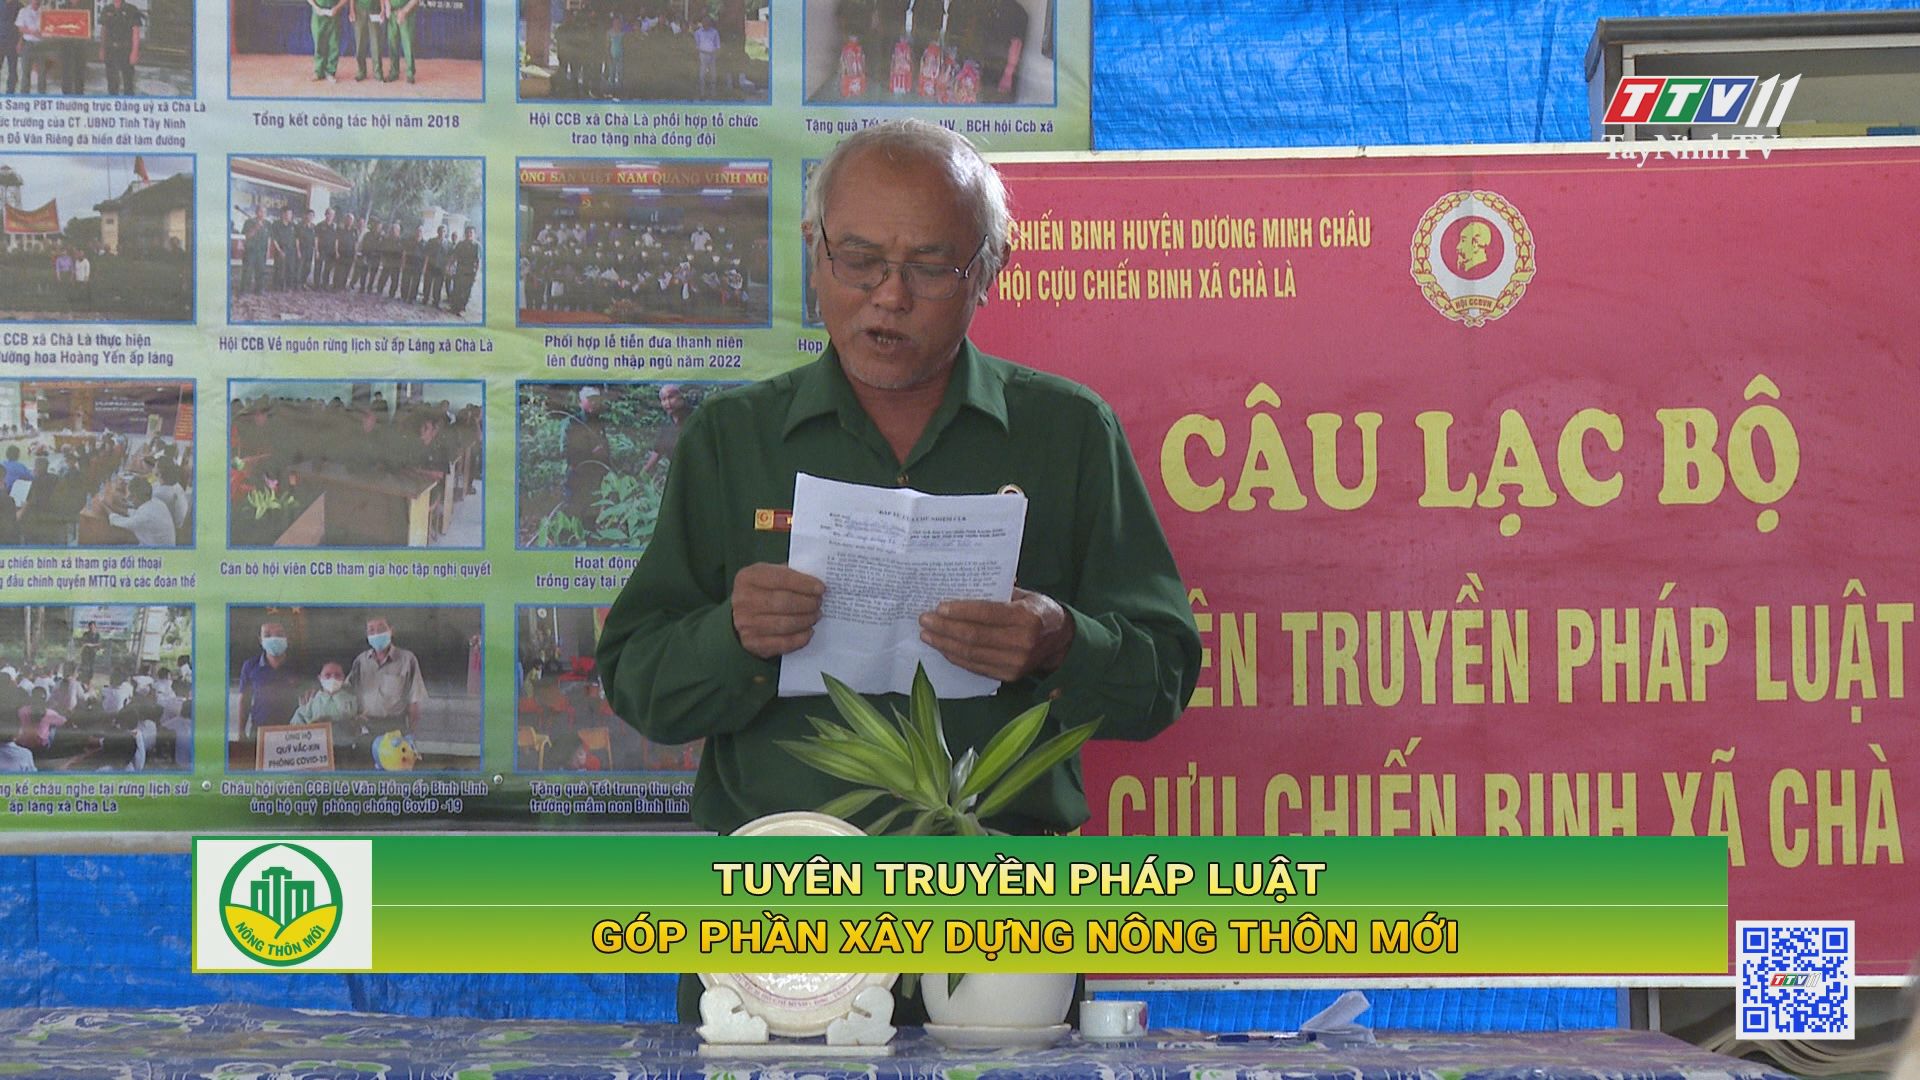 Tuyên truyền pháp luật góp phần xây dựng nông thôn mới | TayNinhTV